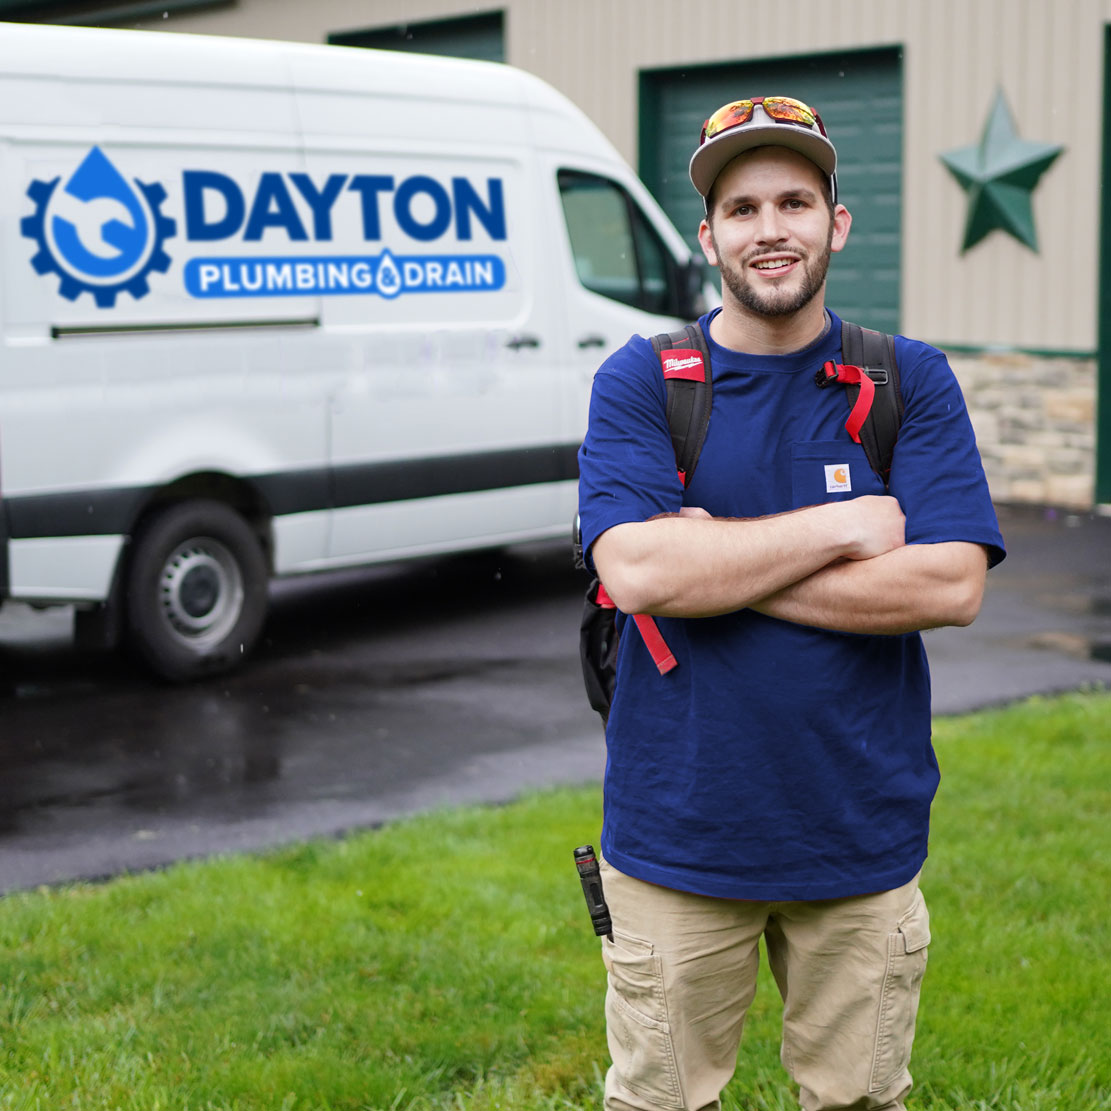 Dayton Plumbing & Drain